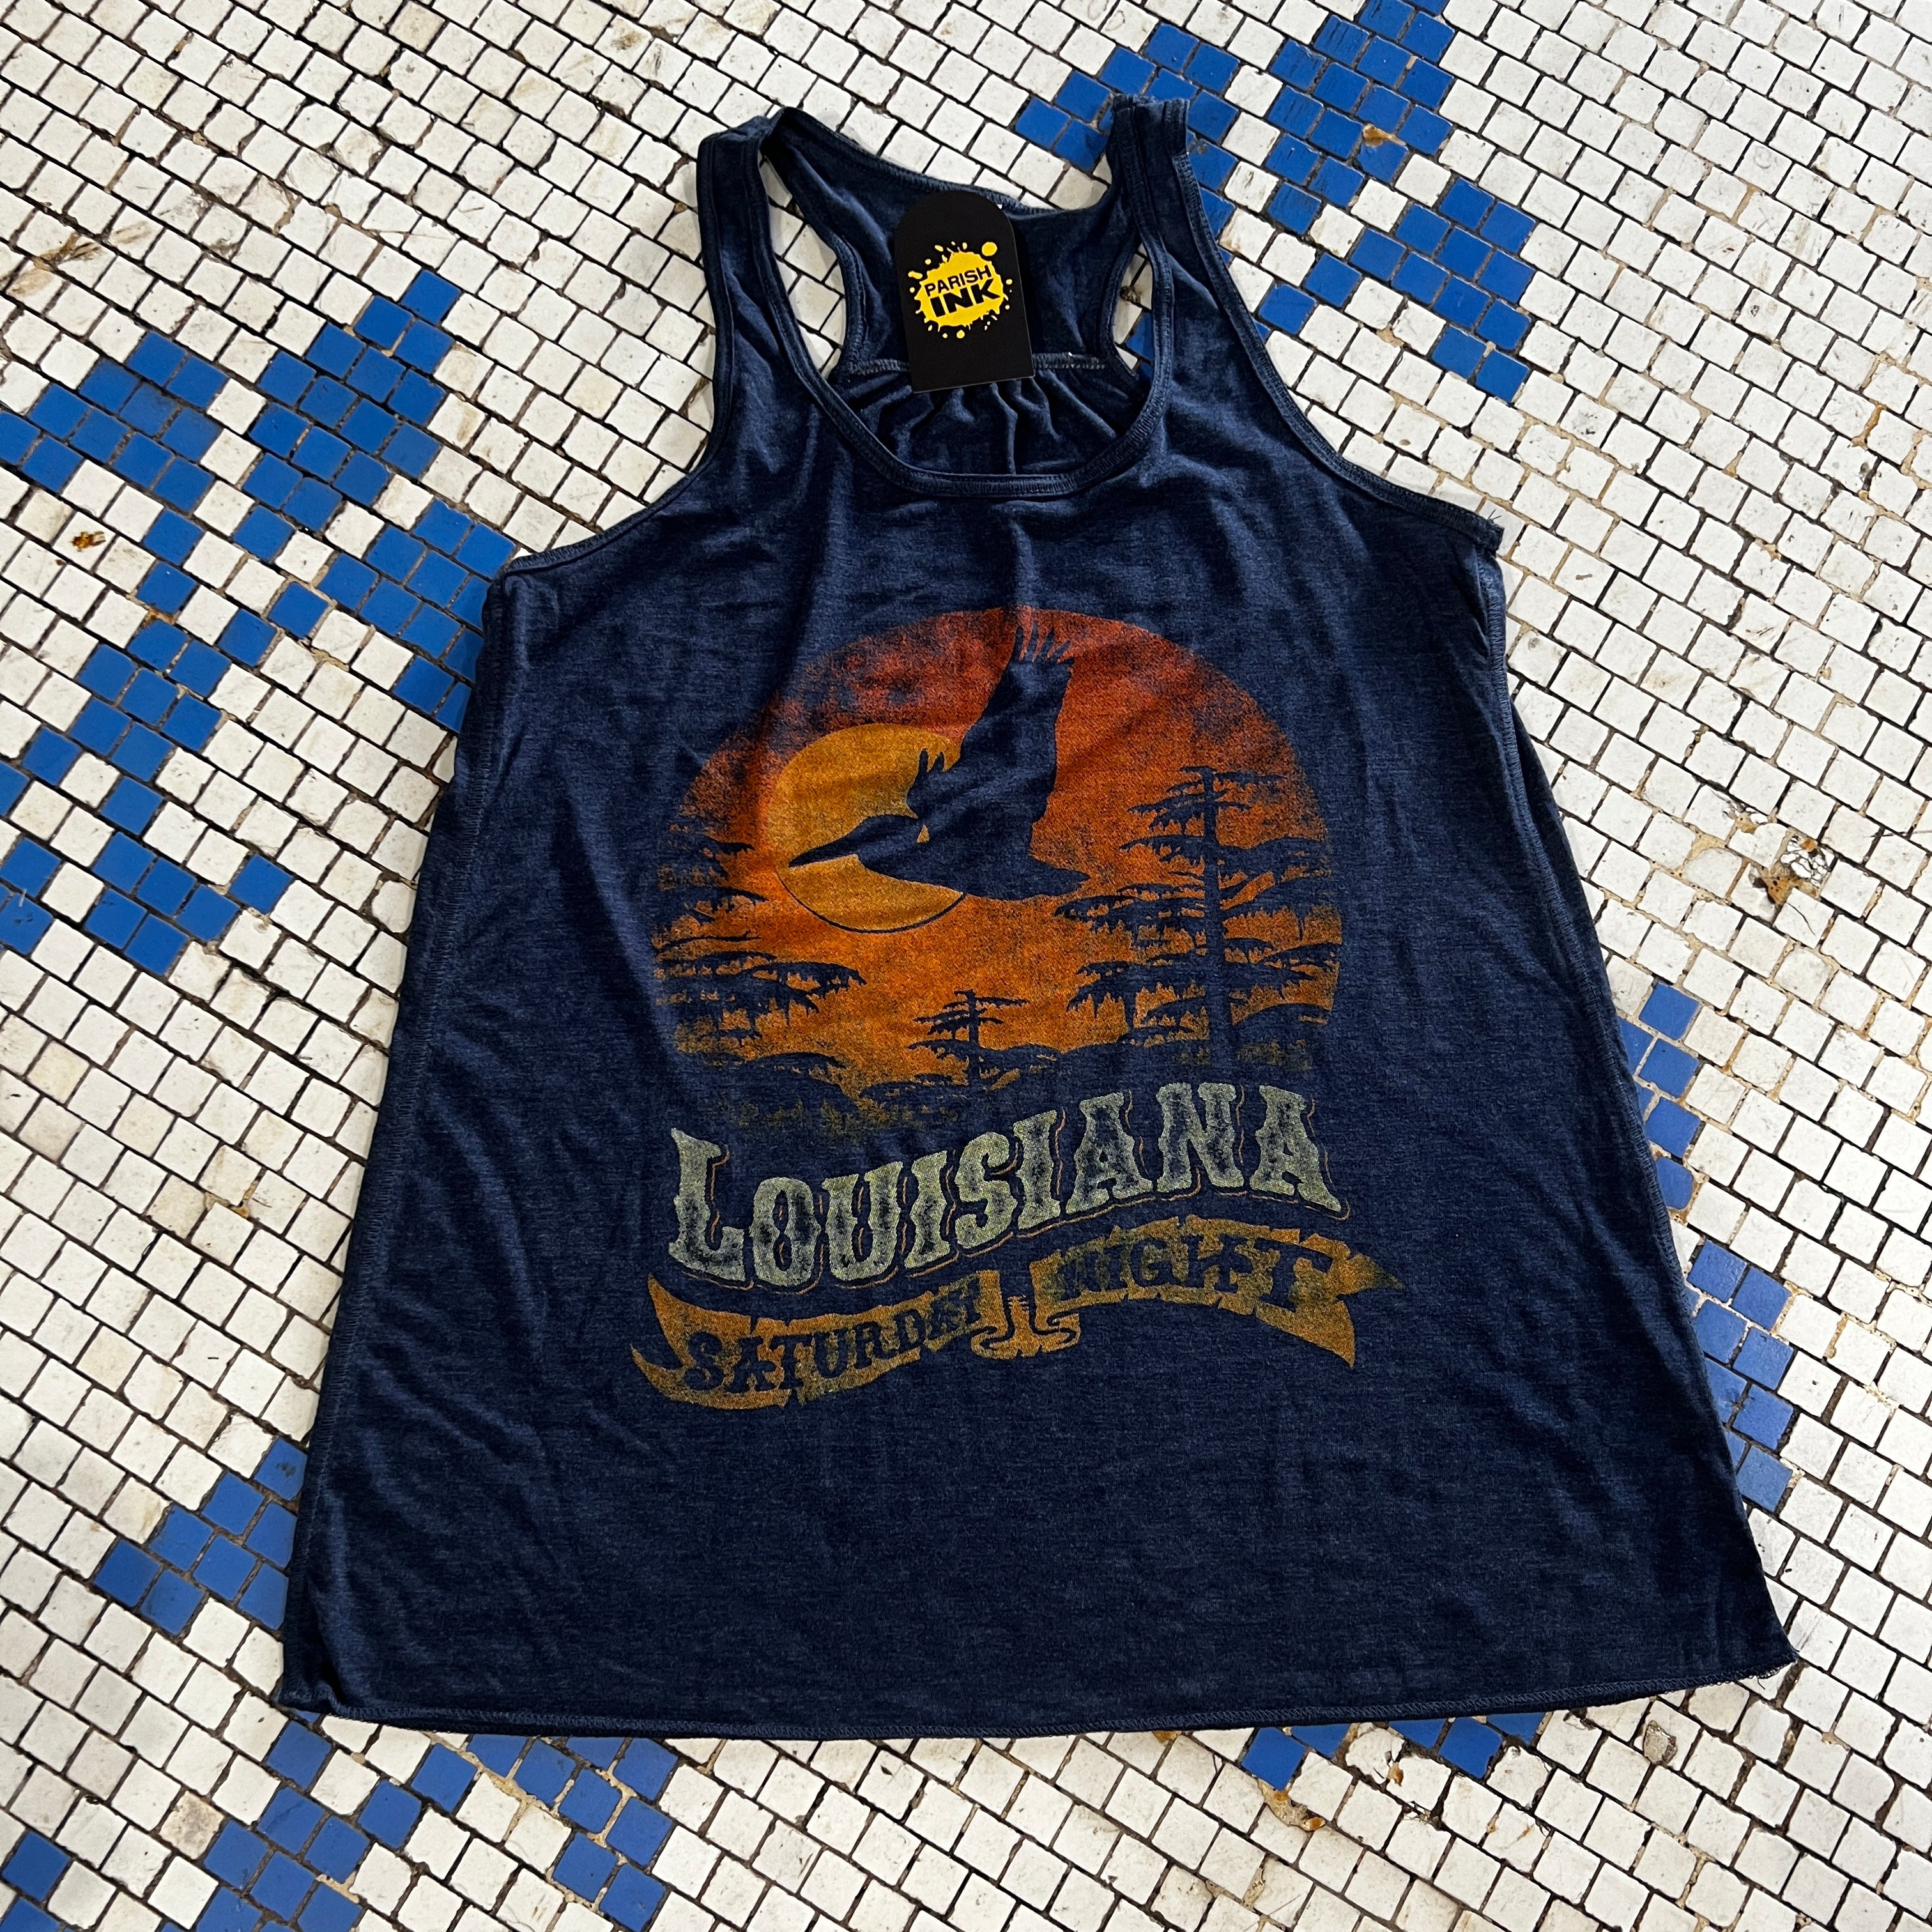 Louisiana Saturday Night Shirt – 812 Hickory